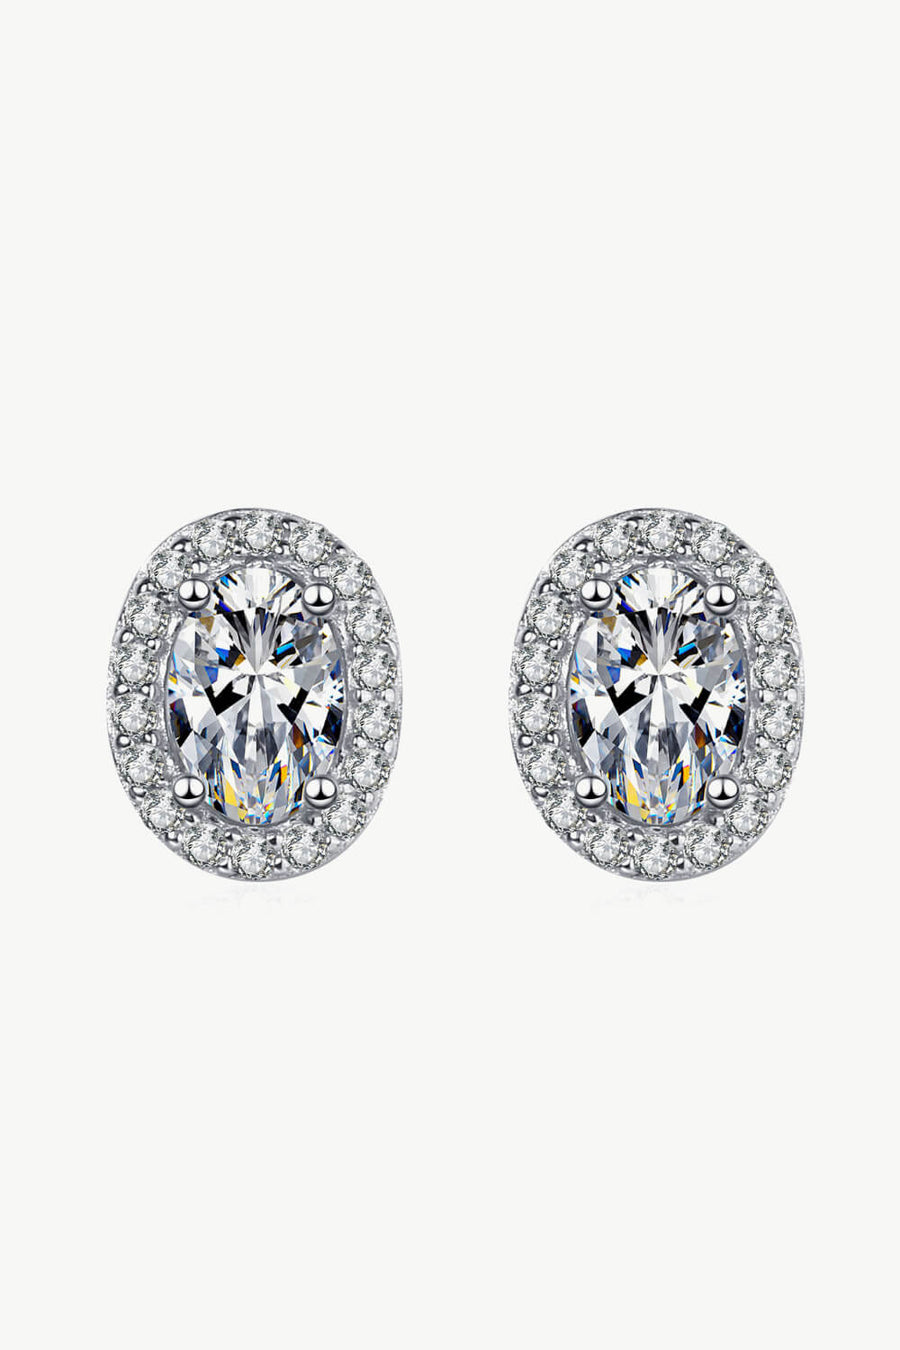 Best Diamond Earrings Jewelry Gifts for Women | 1 Carat Diamond Stud Earrings - Future Style | MASON New York